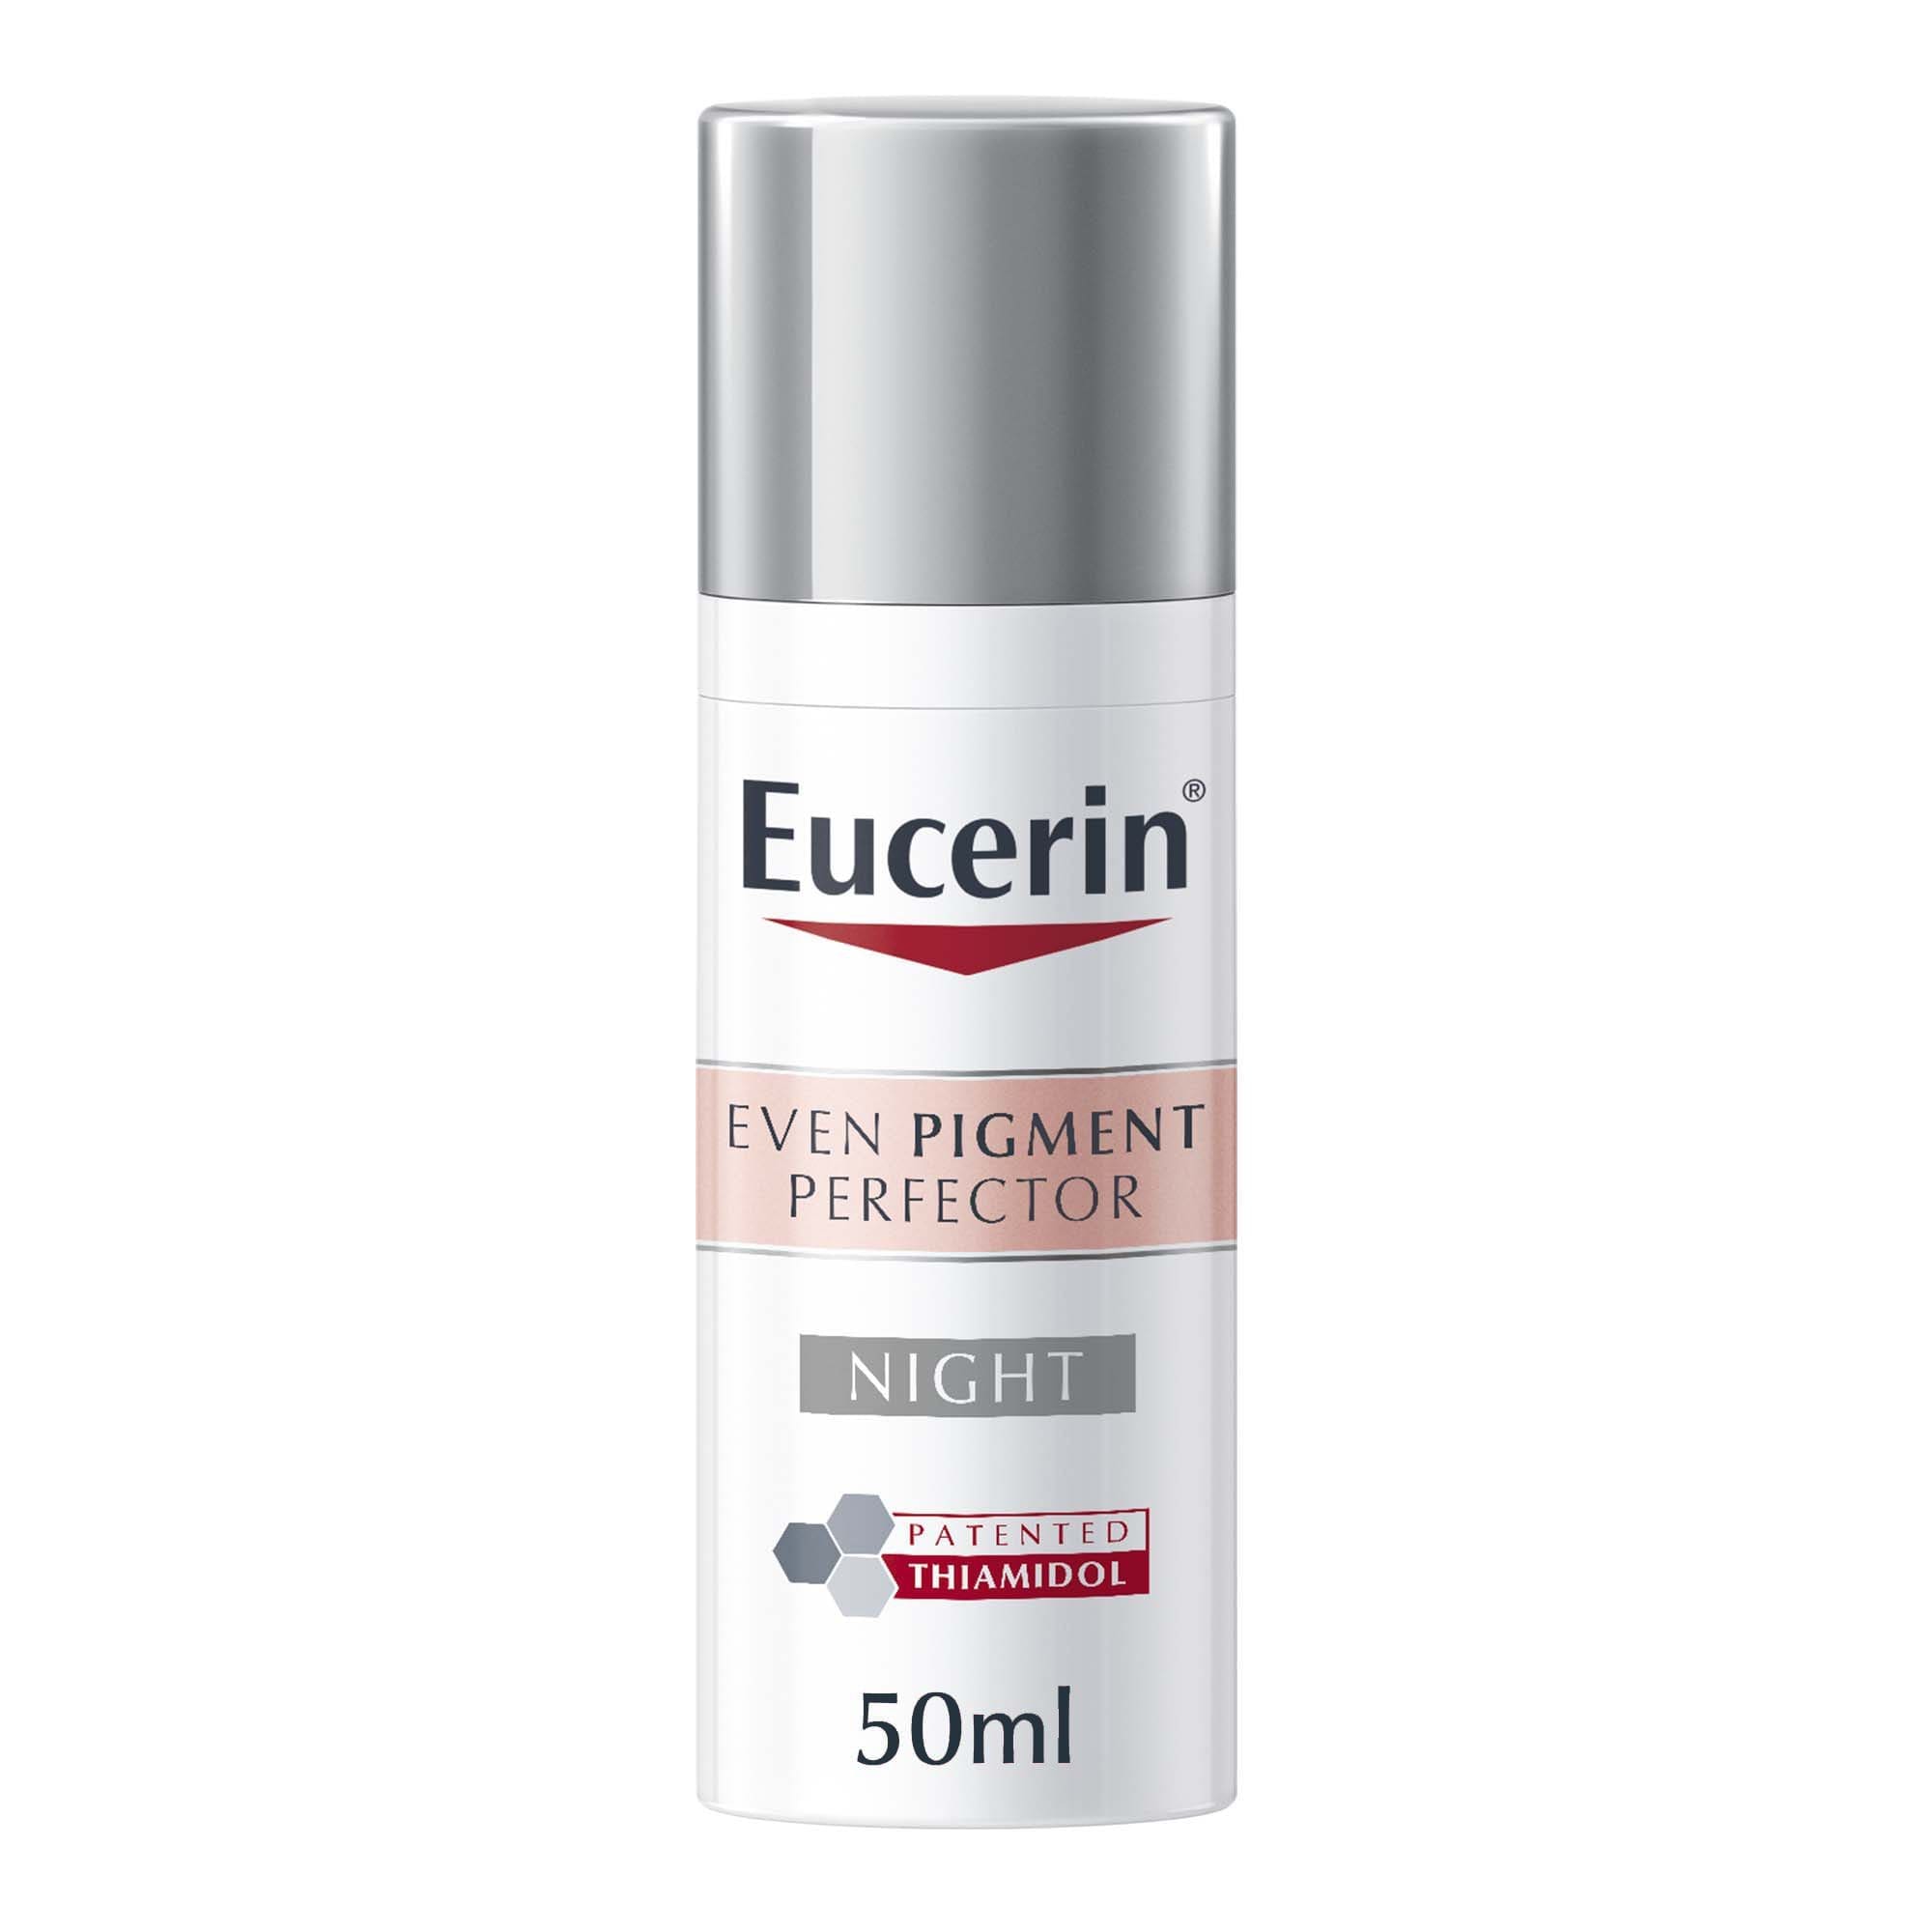 Eucerin Even Pigment Perfector Night Cream, 50ml